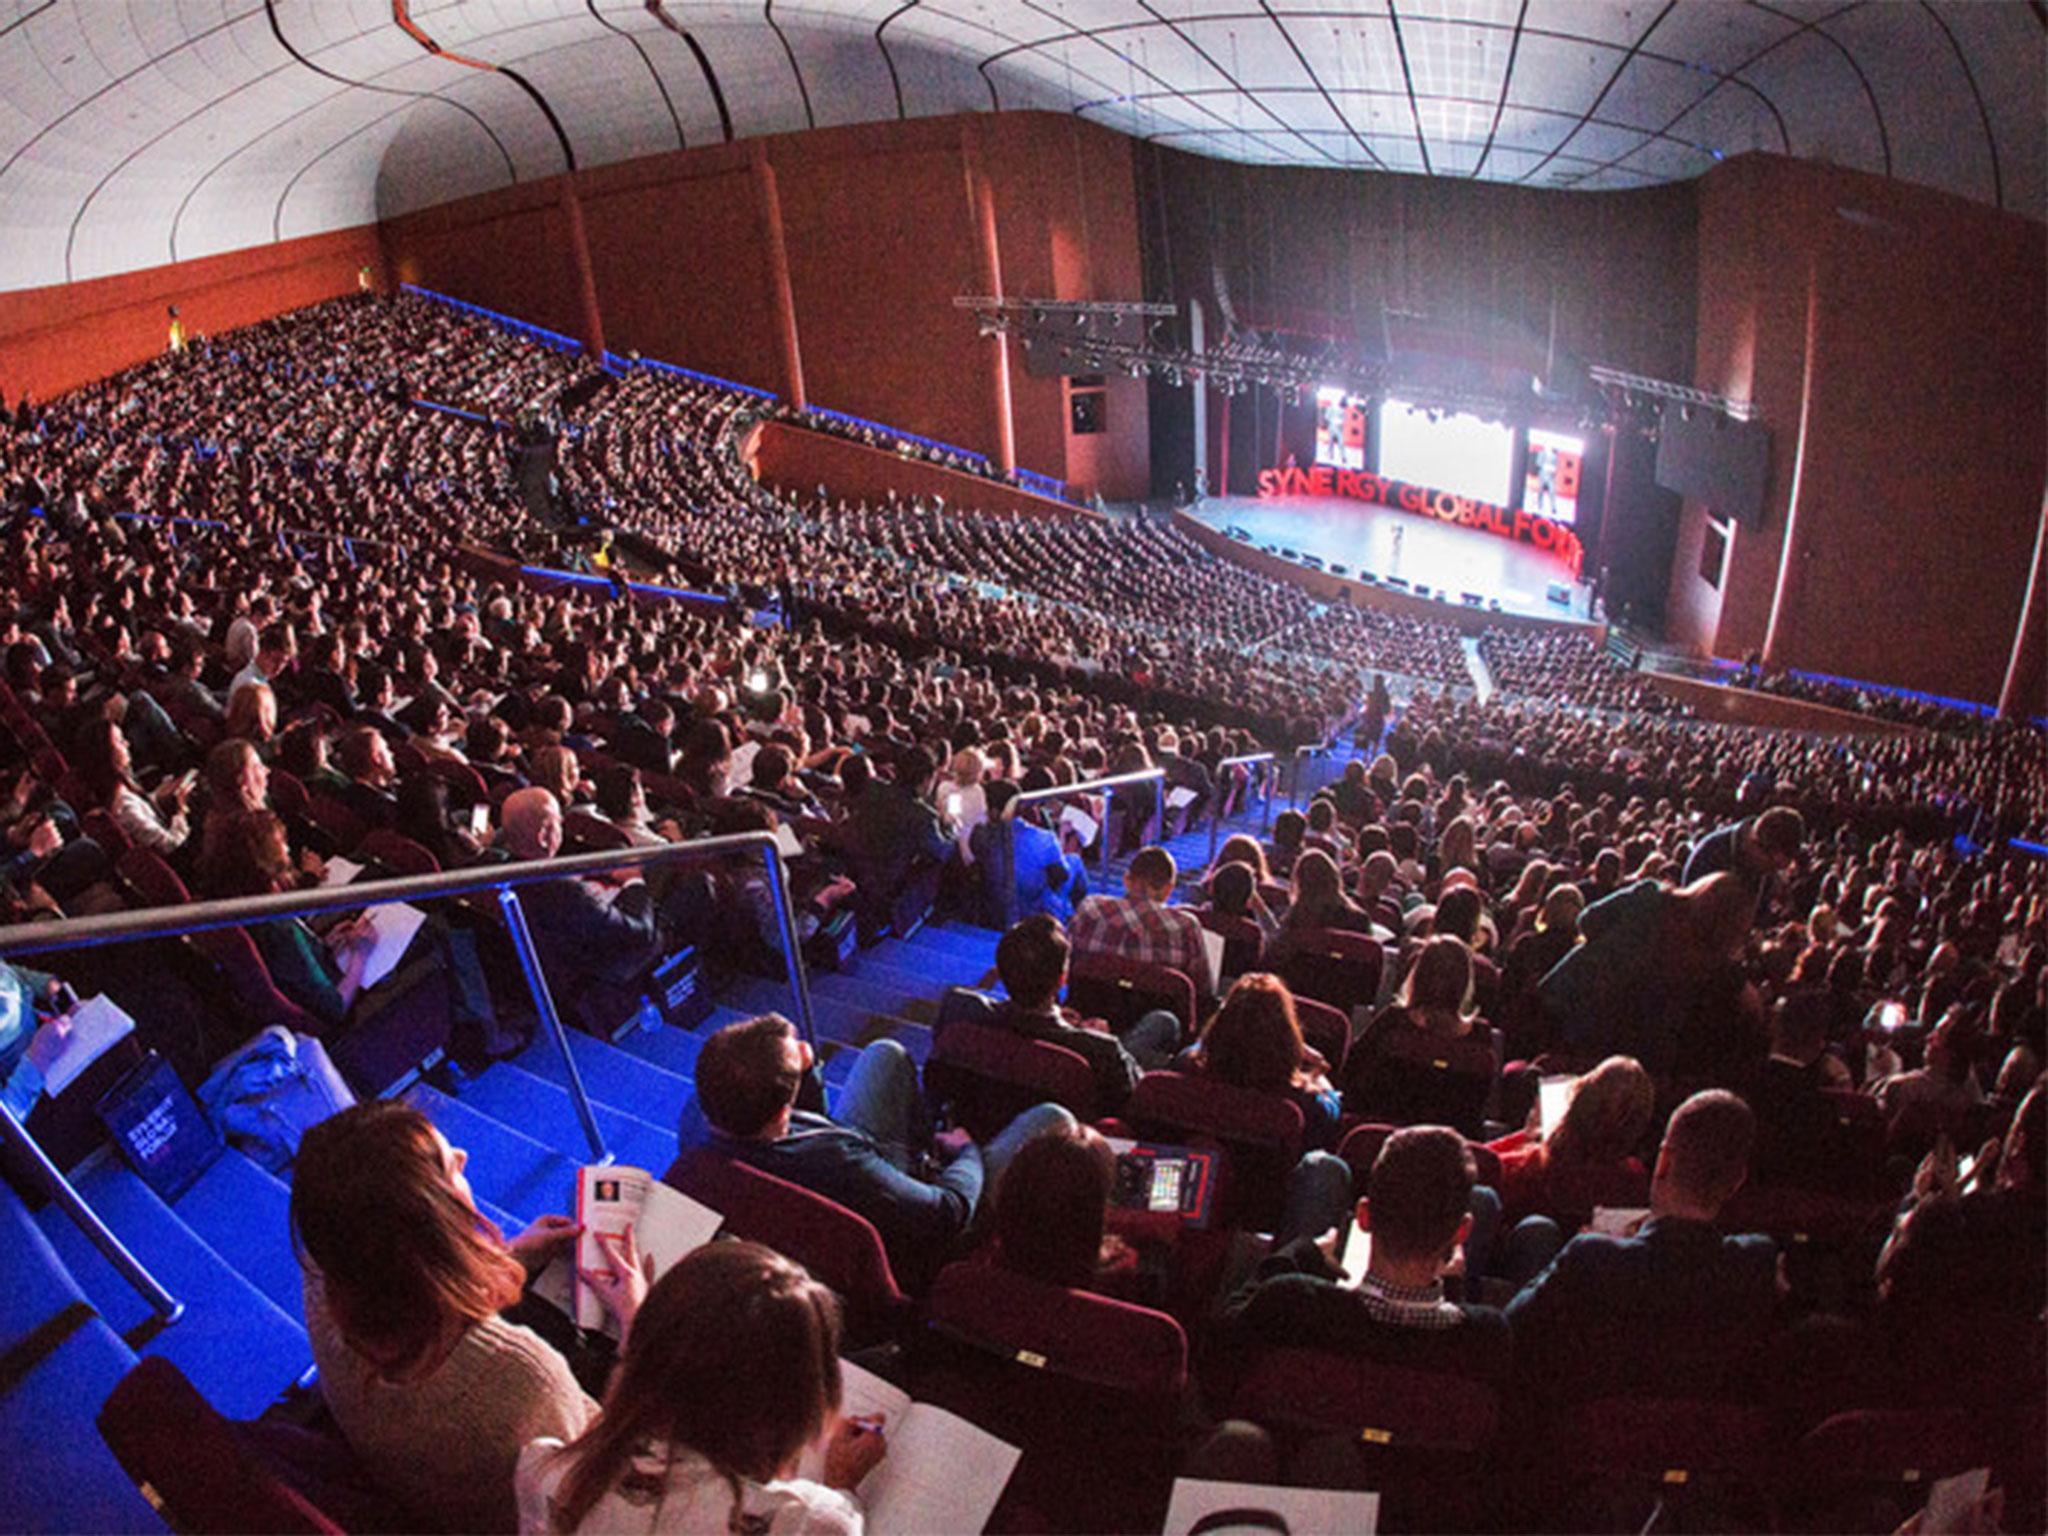 Lasted forum. Зал со сценой. Огромный зал людей. Концертный зал с людьми. Полный зал.